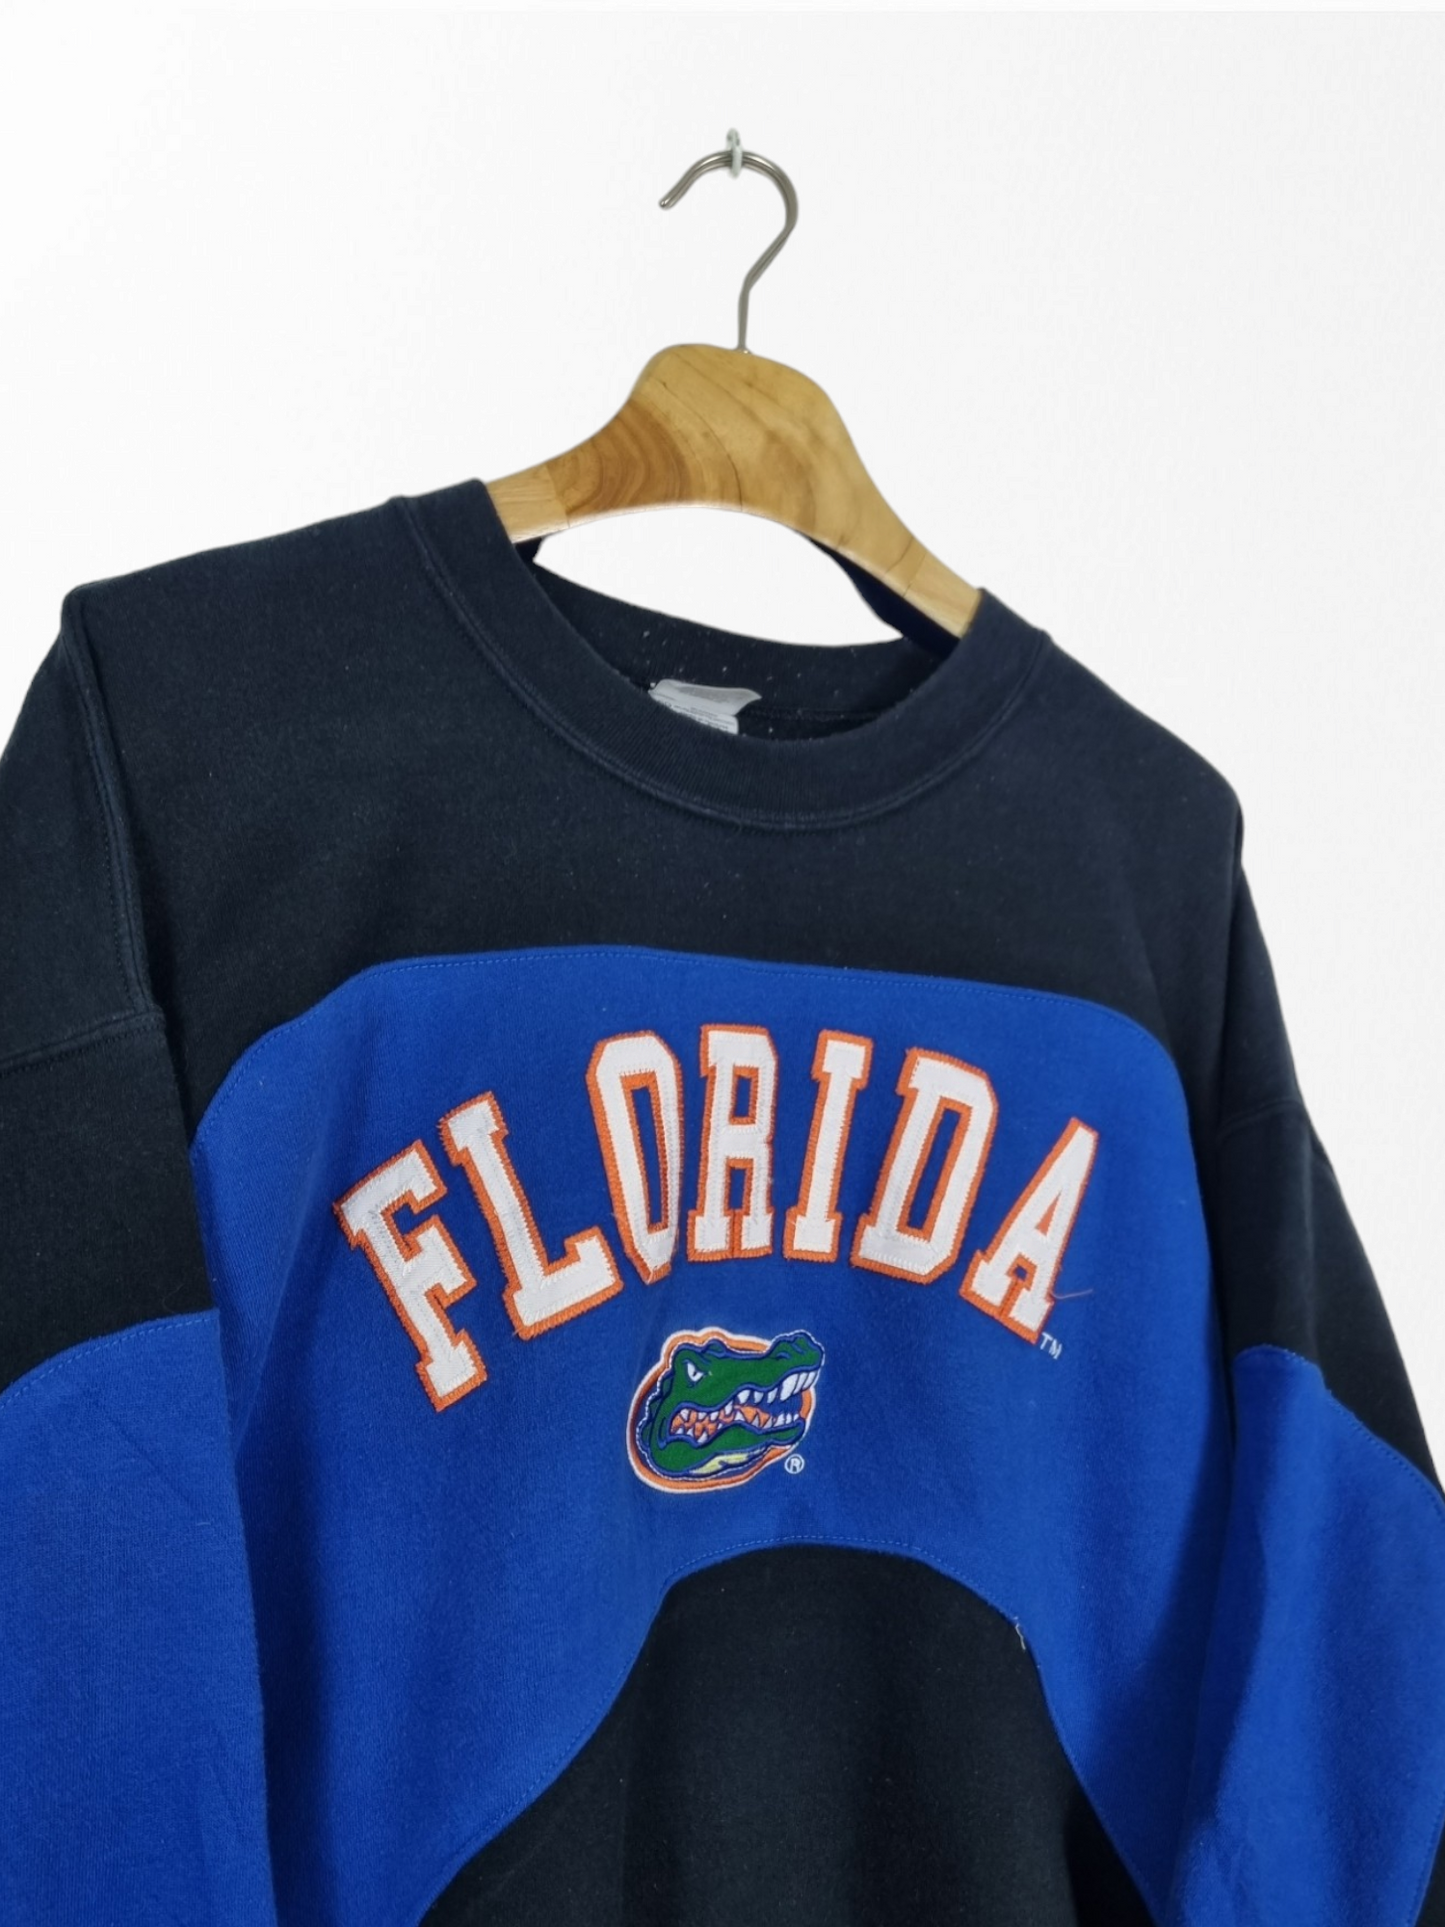 Florida crocodile sweater maat L